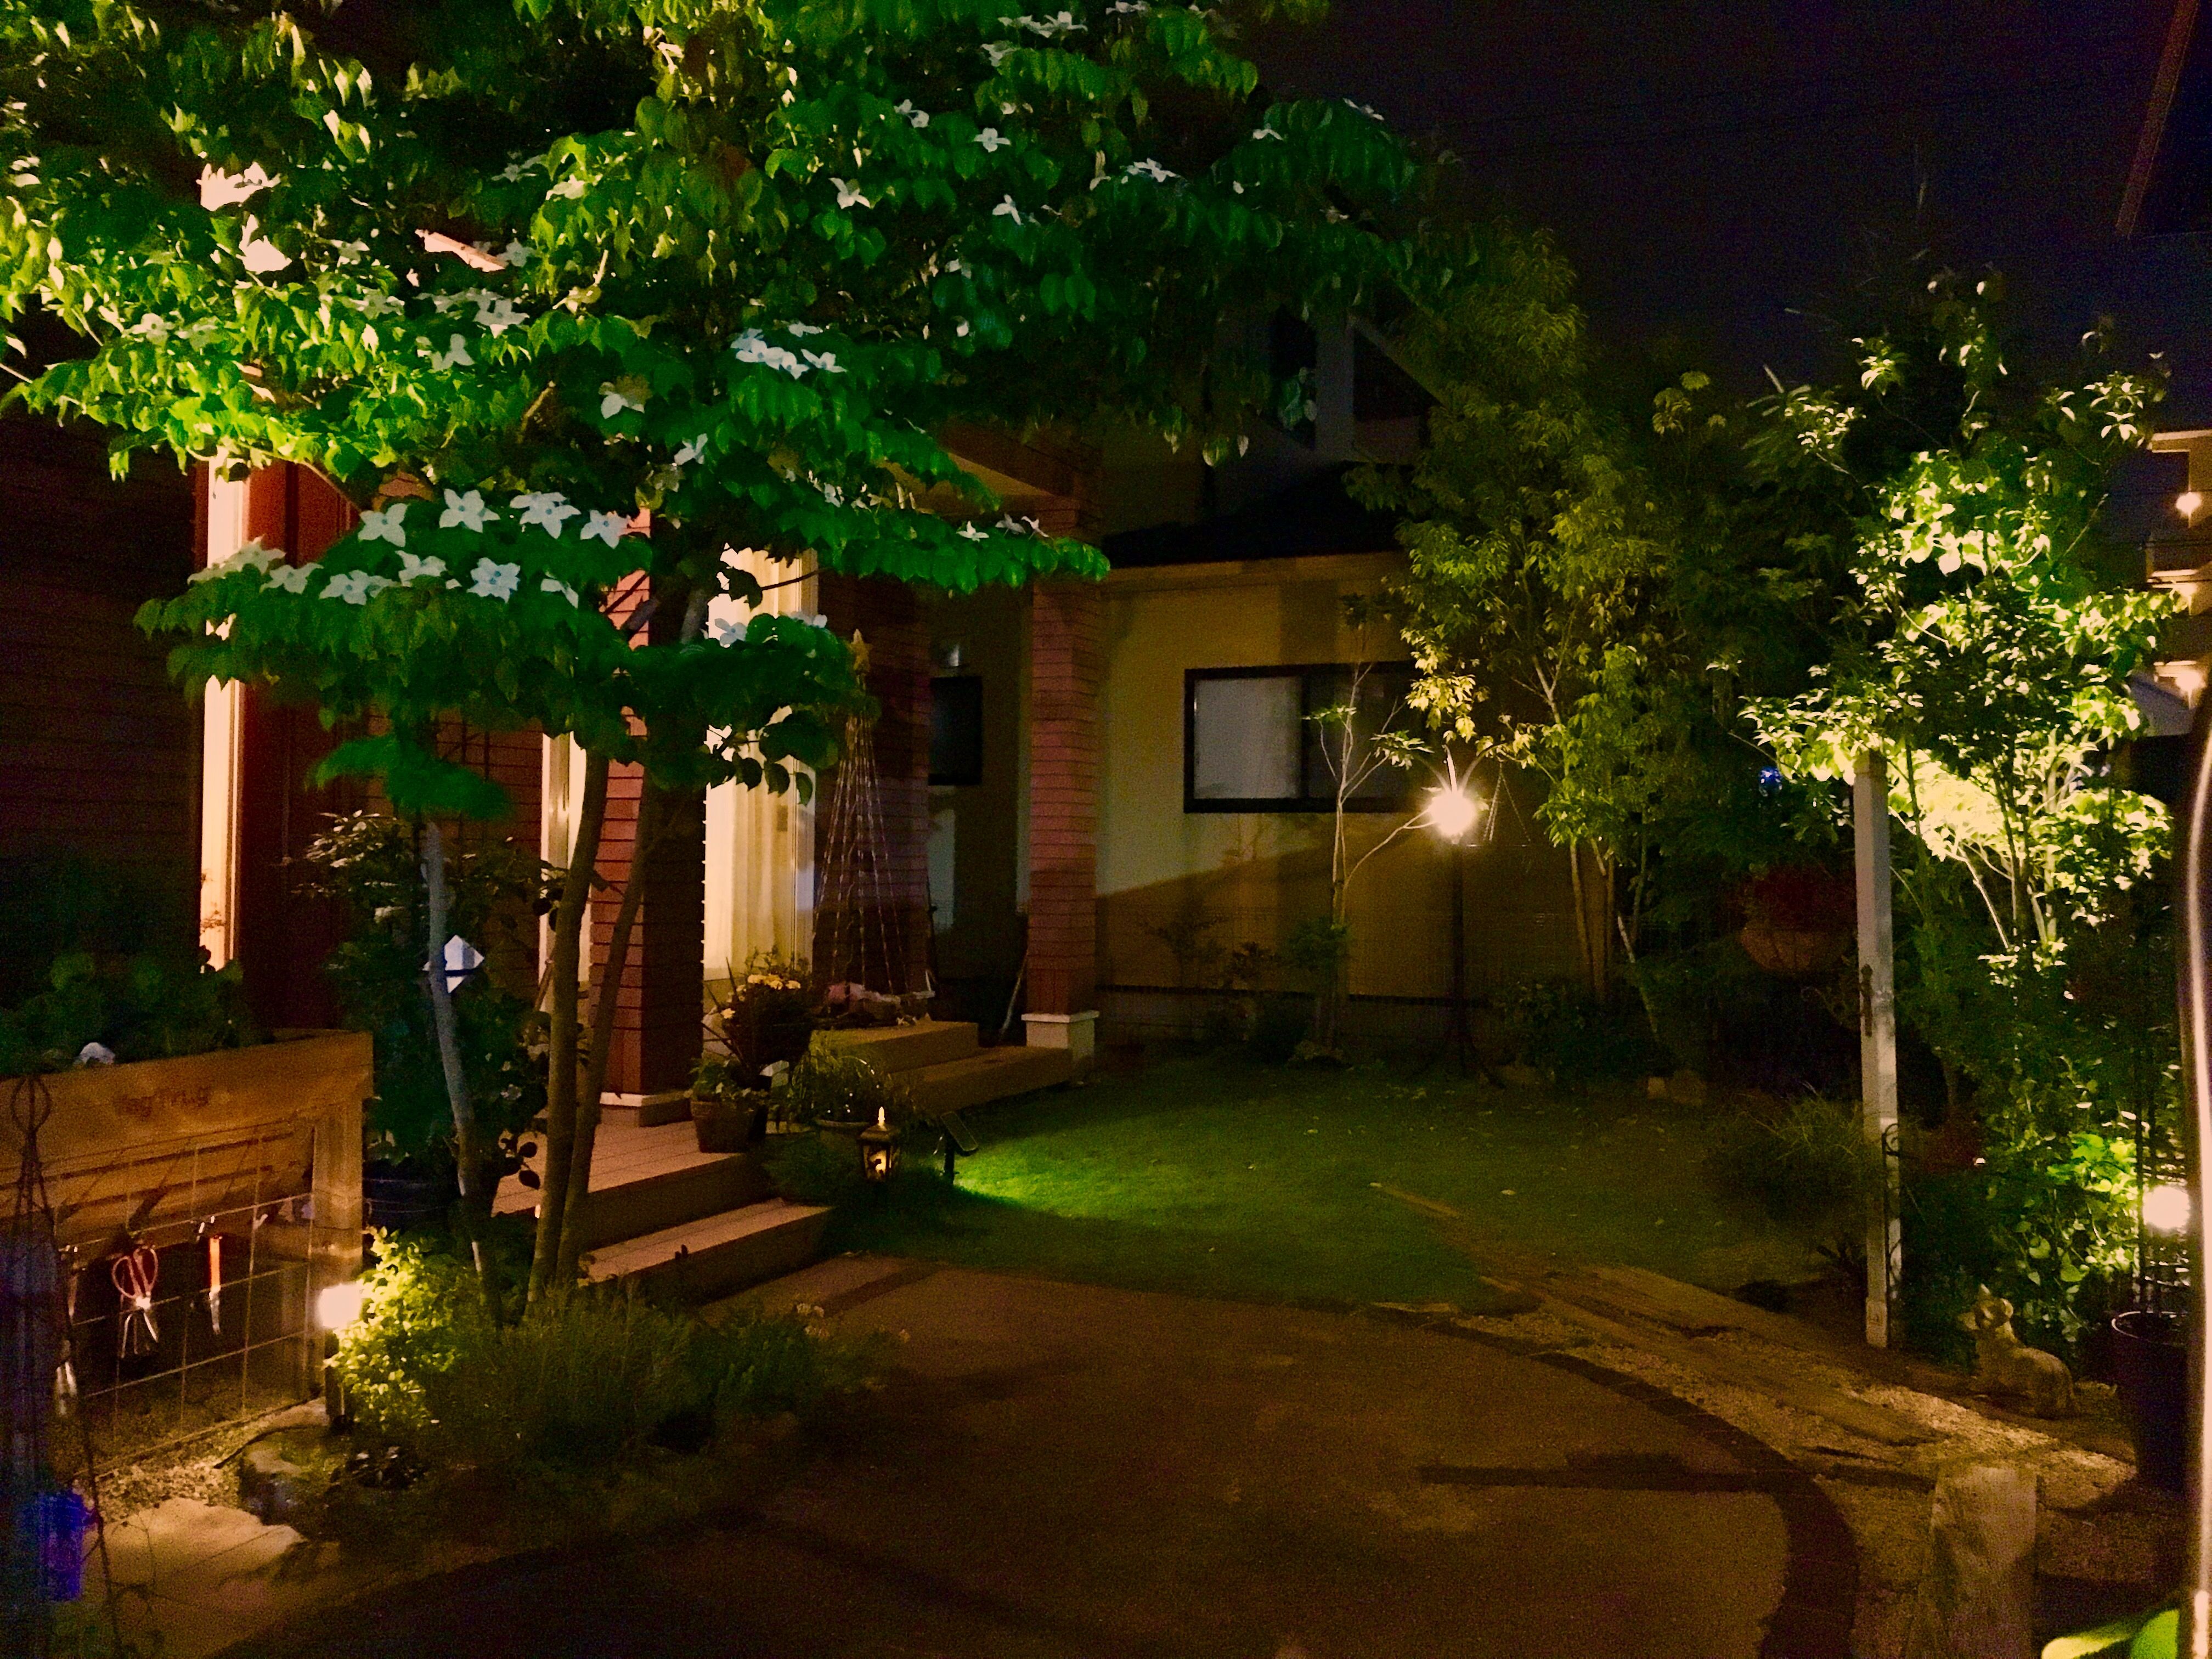 ガーデンライトで庭をライトアップしよう 6throom 庭での暮らしを楽しもう 楽天ブログ